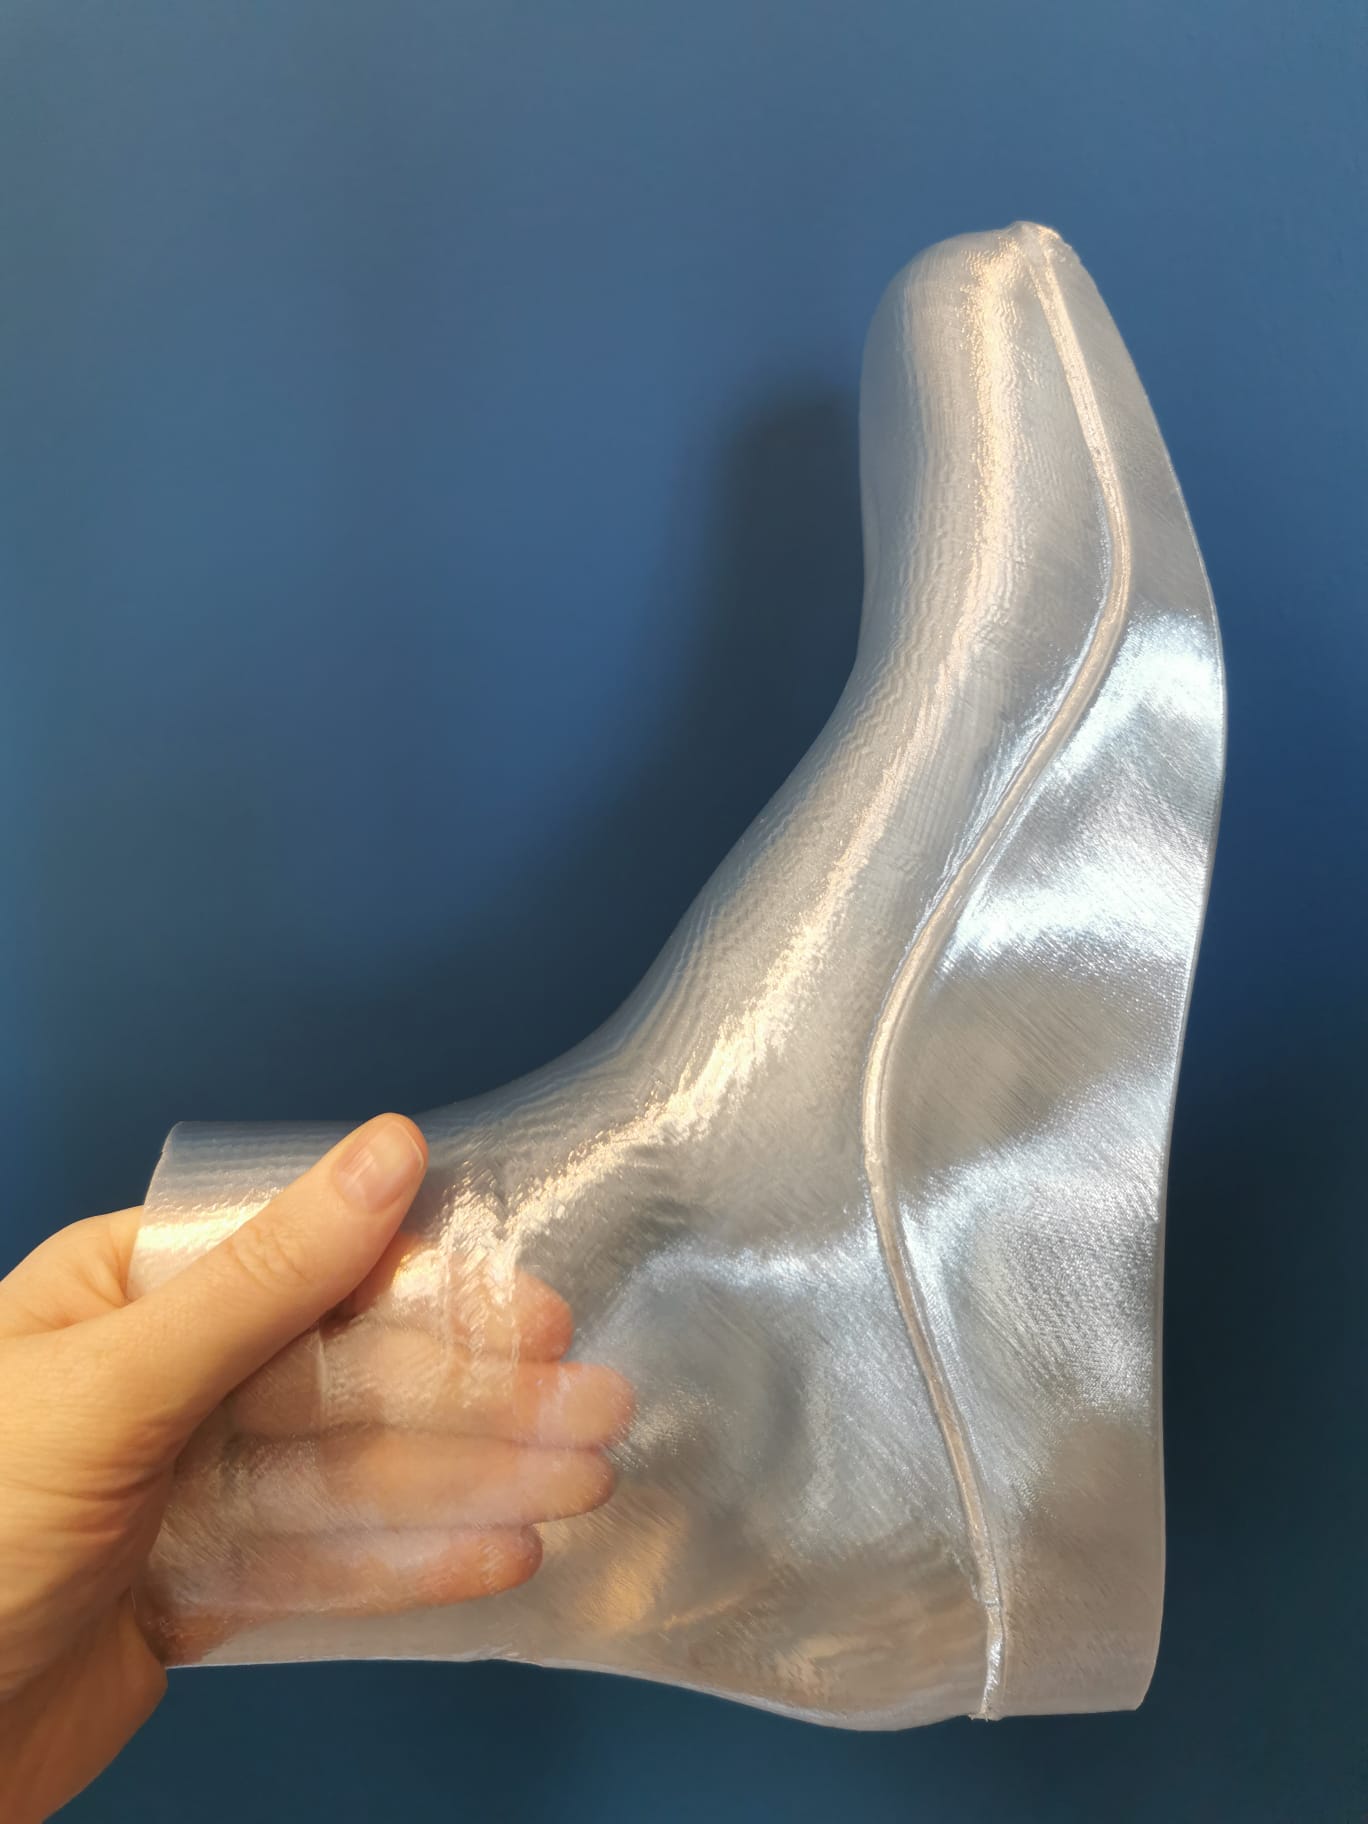 3D printed foil test shoe